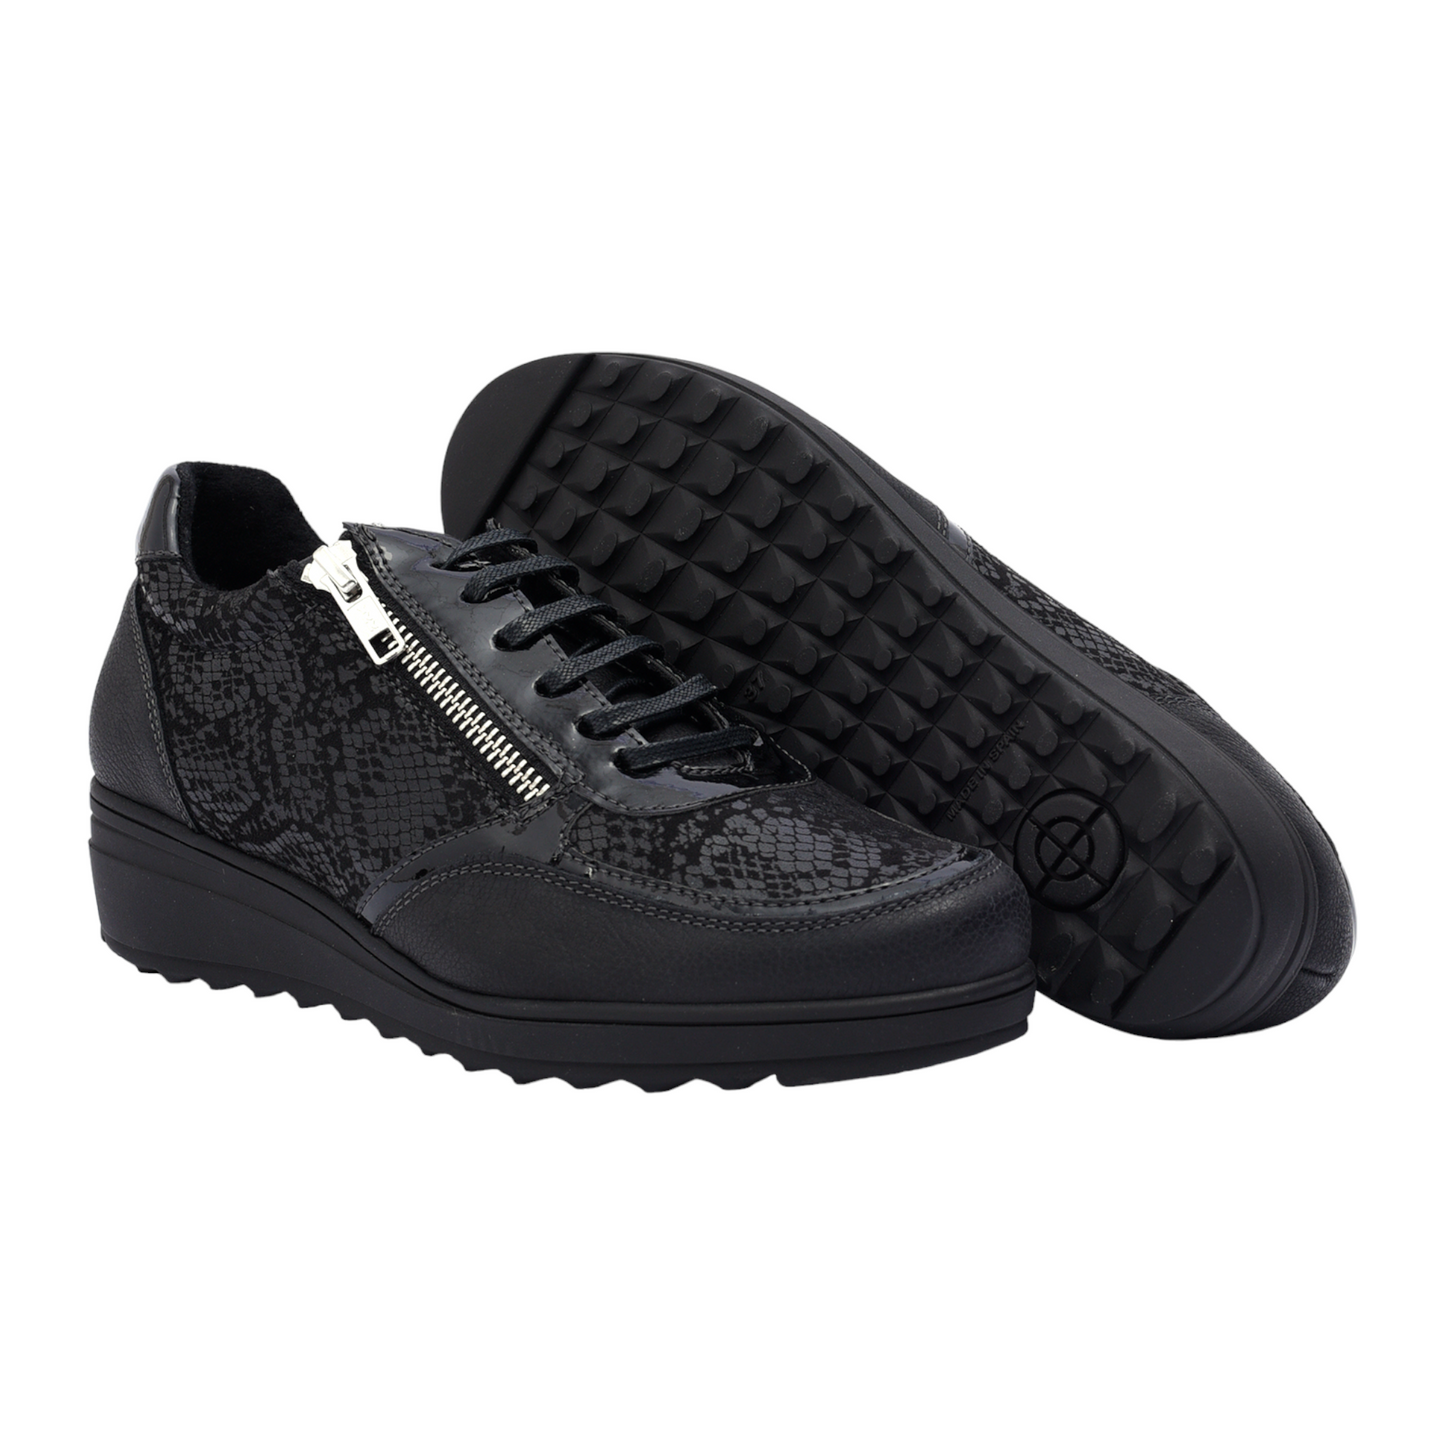 Sneakers Color Negro Con Cremallera Baerchi 55051